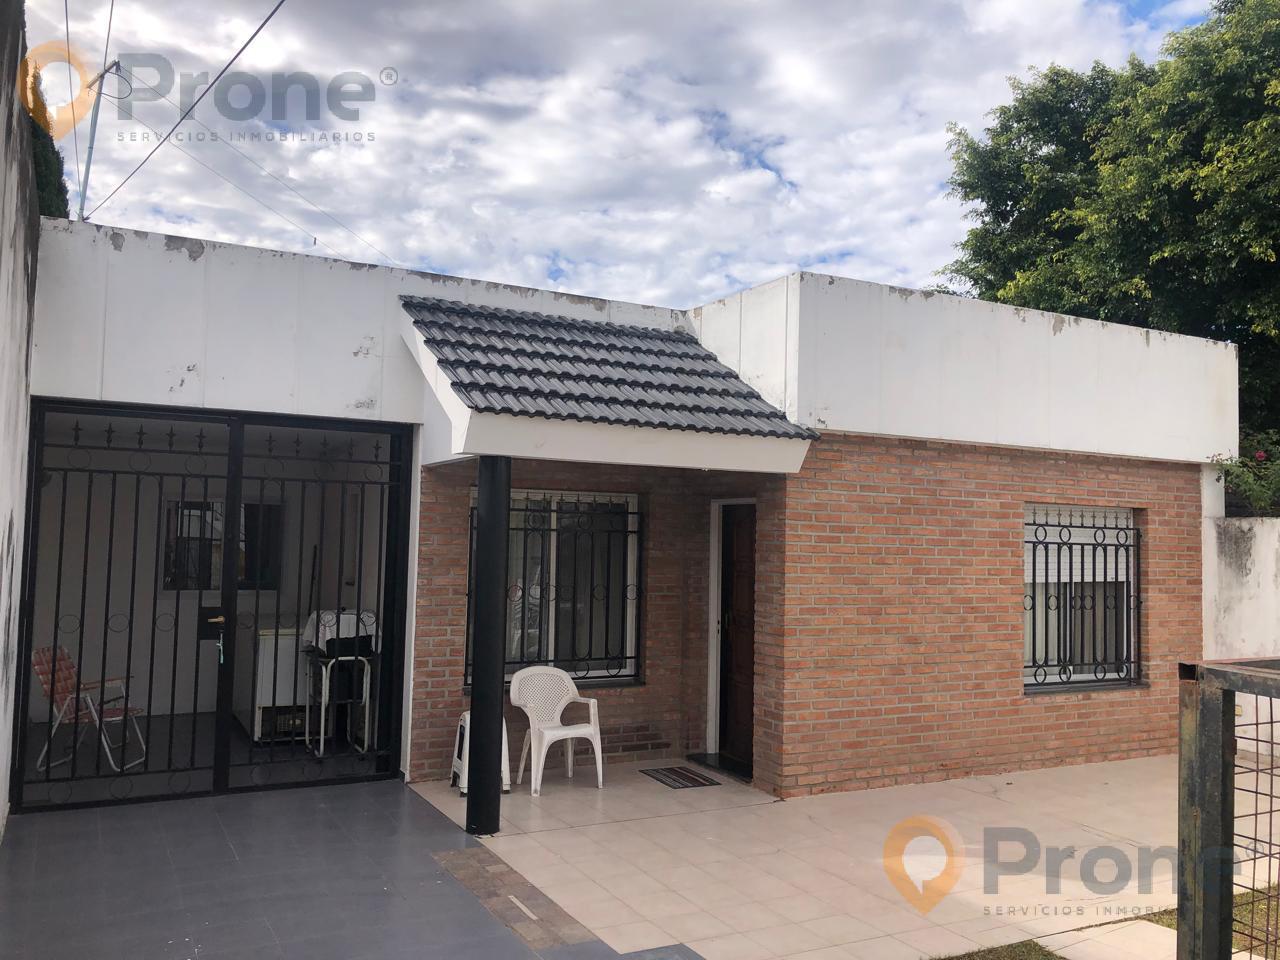 #5069690 | Sale | House | Belgrano (Prone Servicios Inmobiliarios)